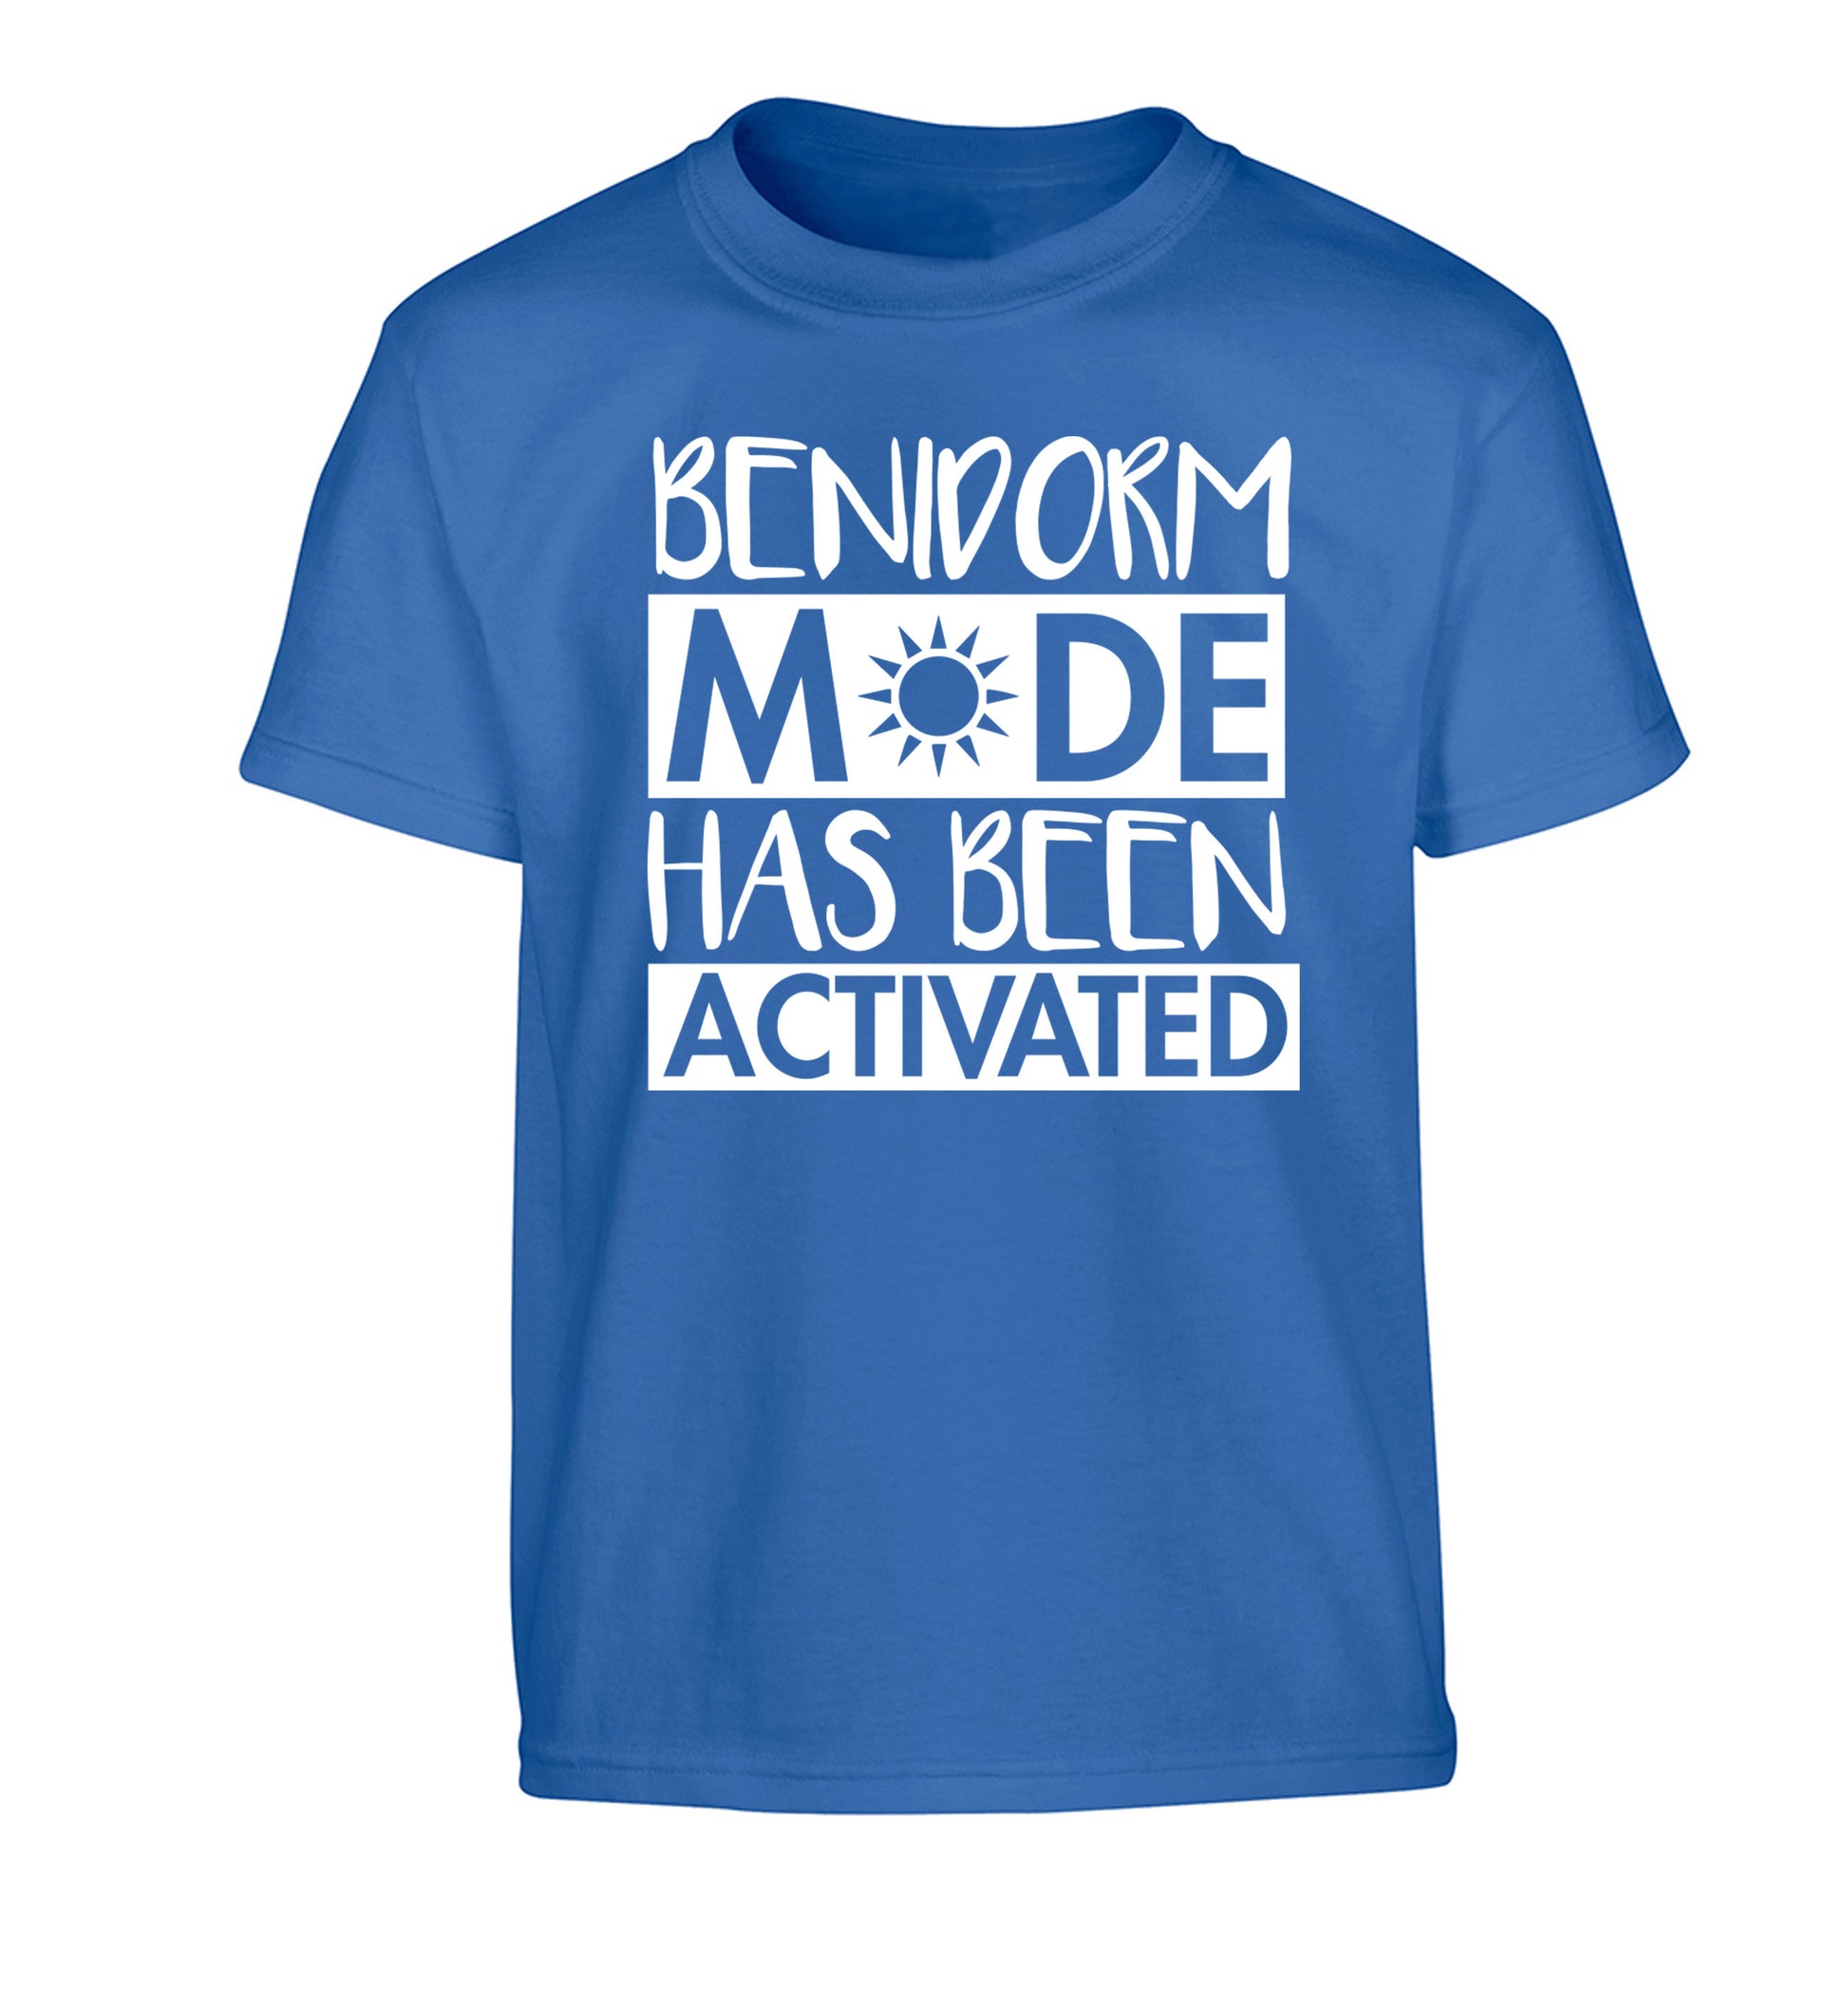 Benidorm mode has been activated Children's blue Tshirt 12-14 Years